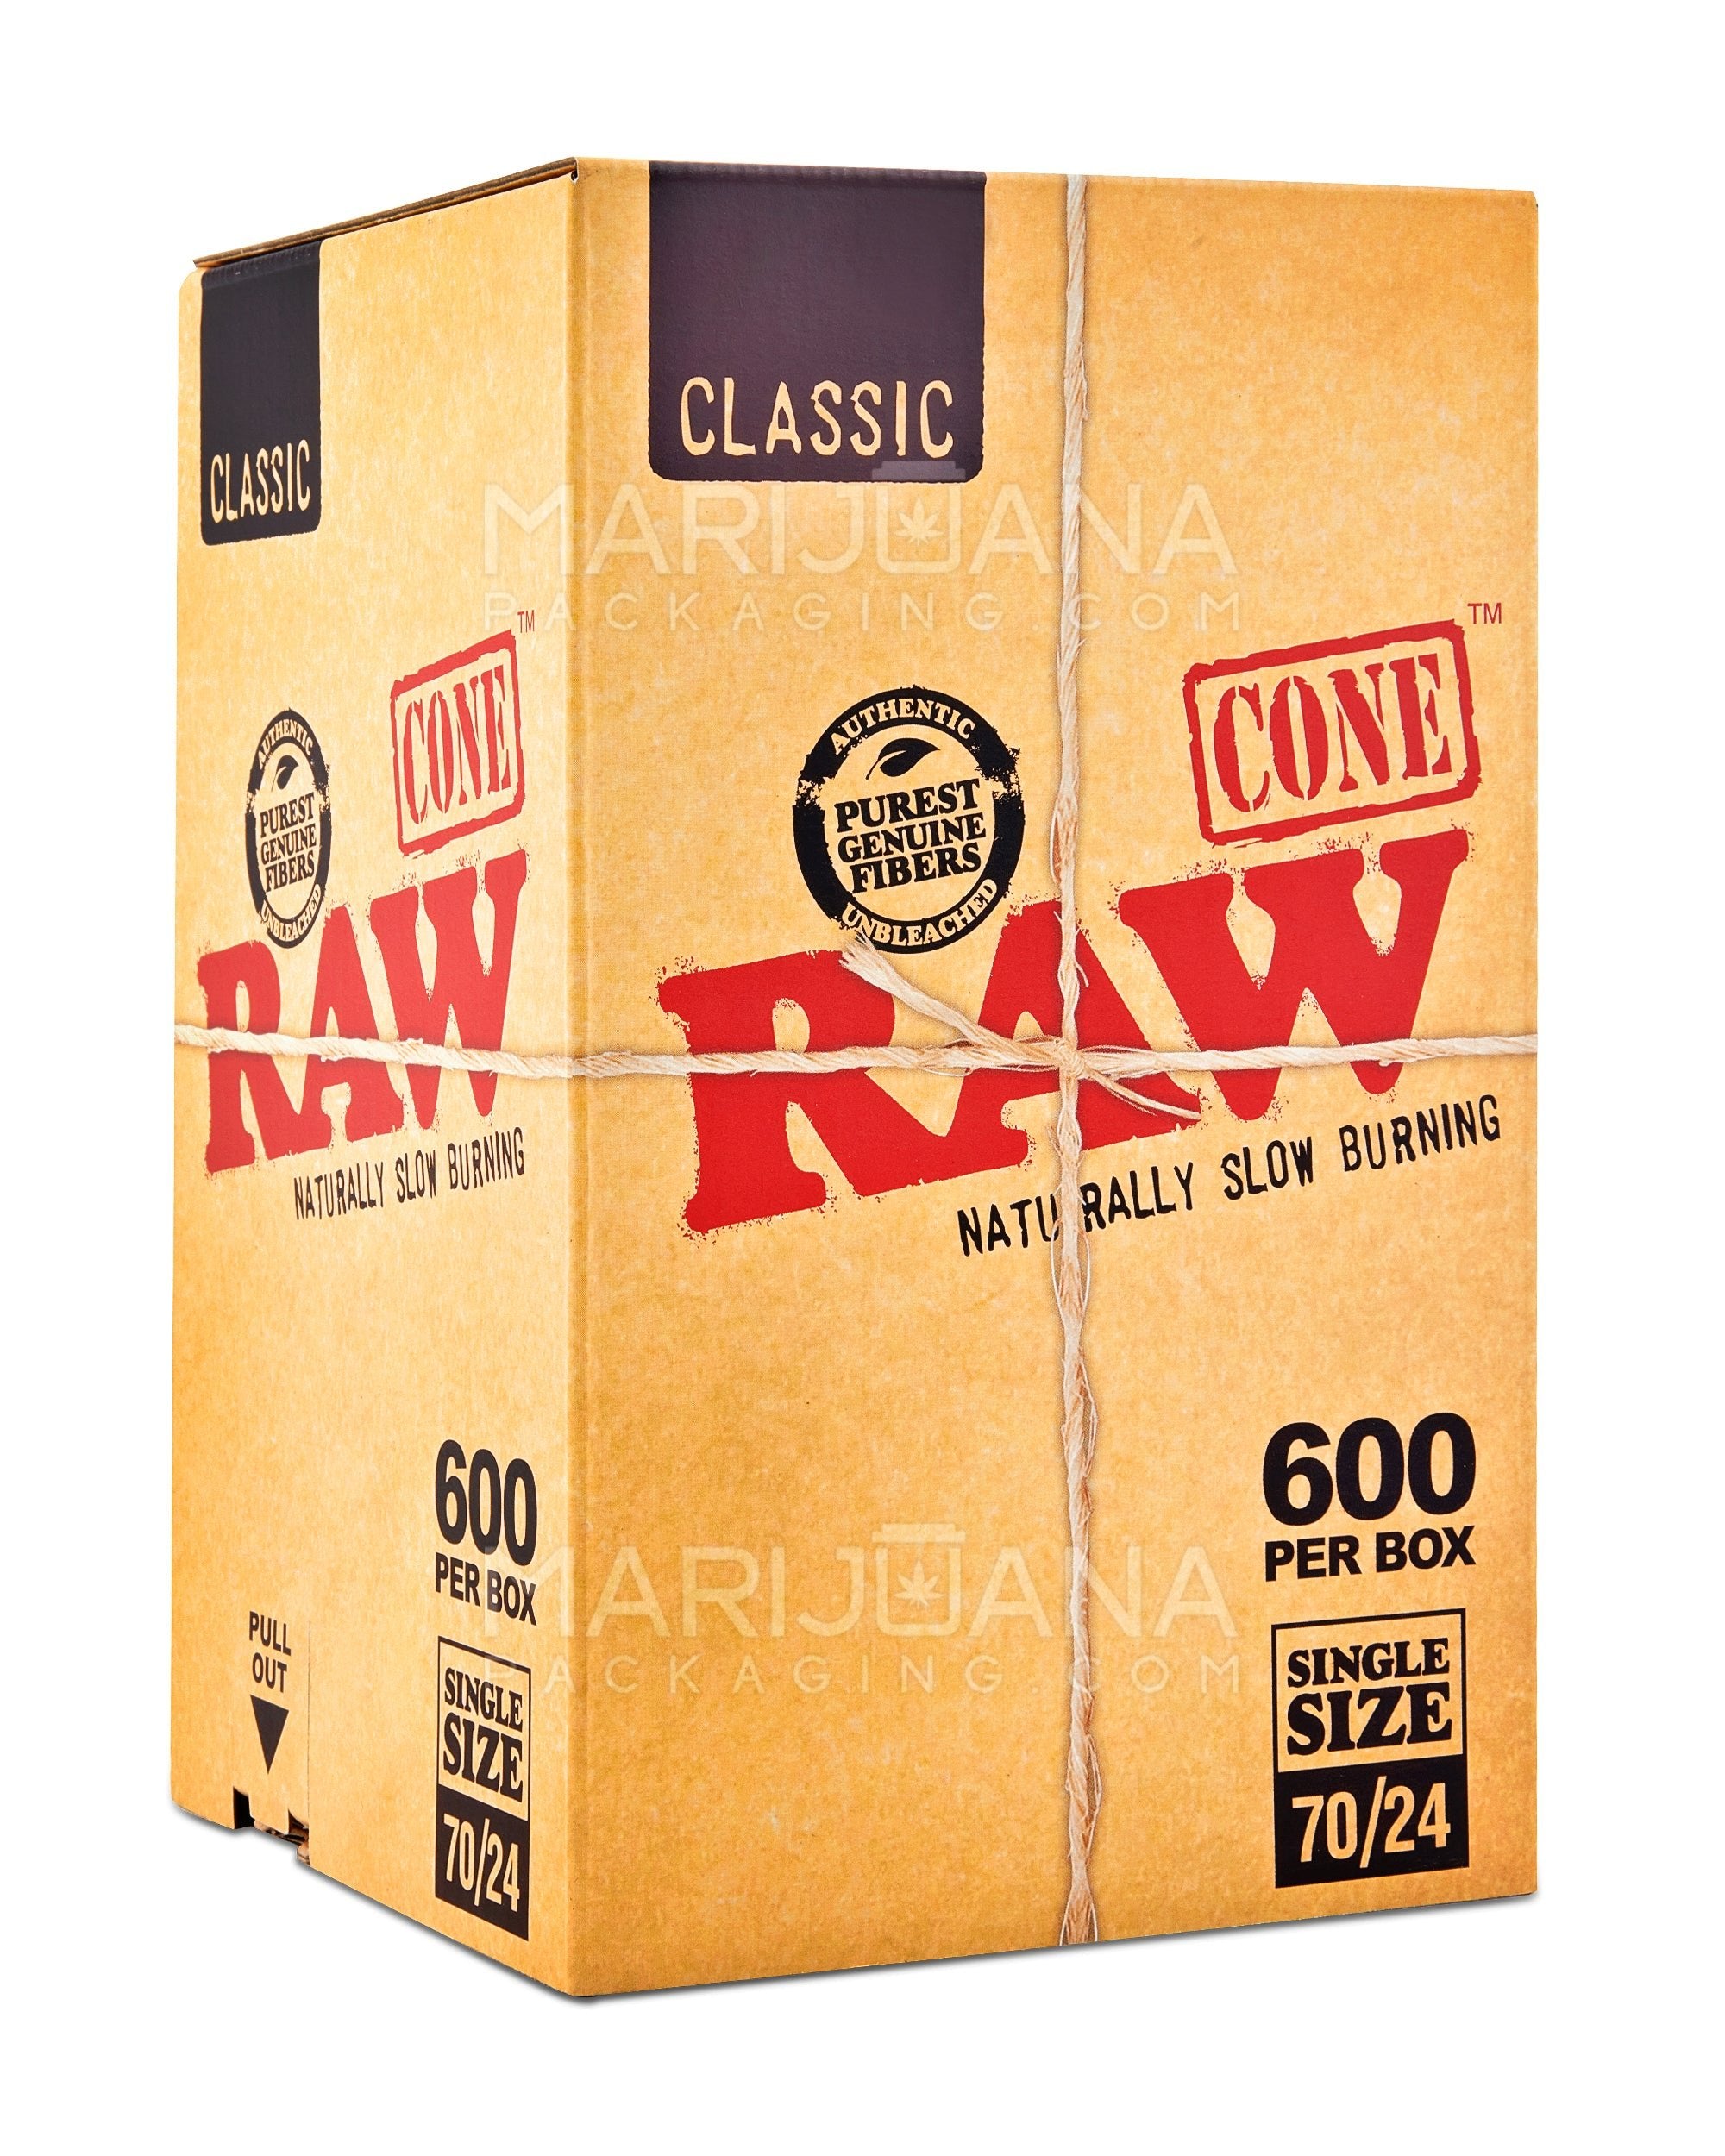 Vente de papier Raw King Size Slim 200's Classic